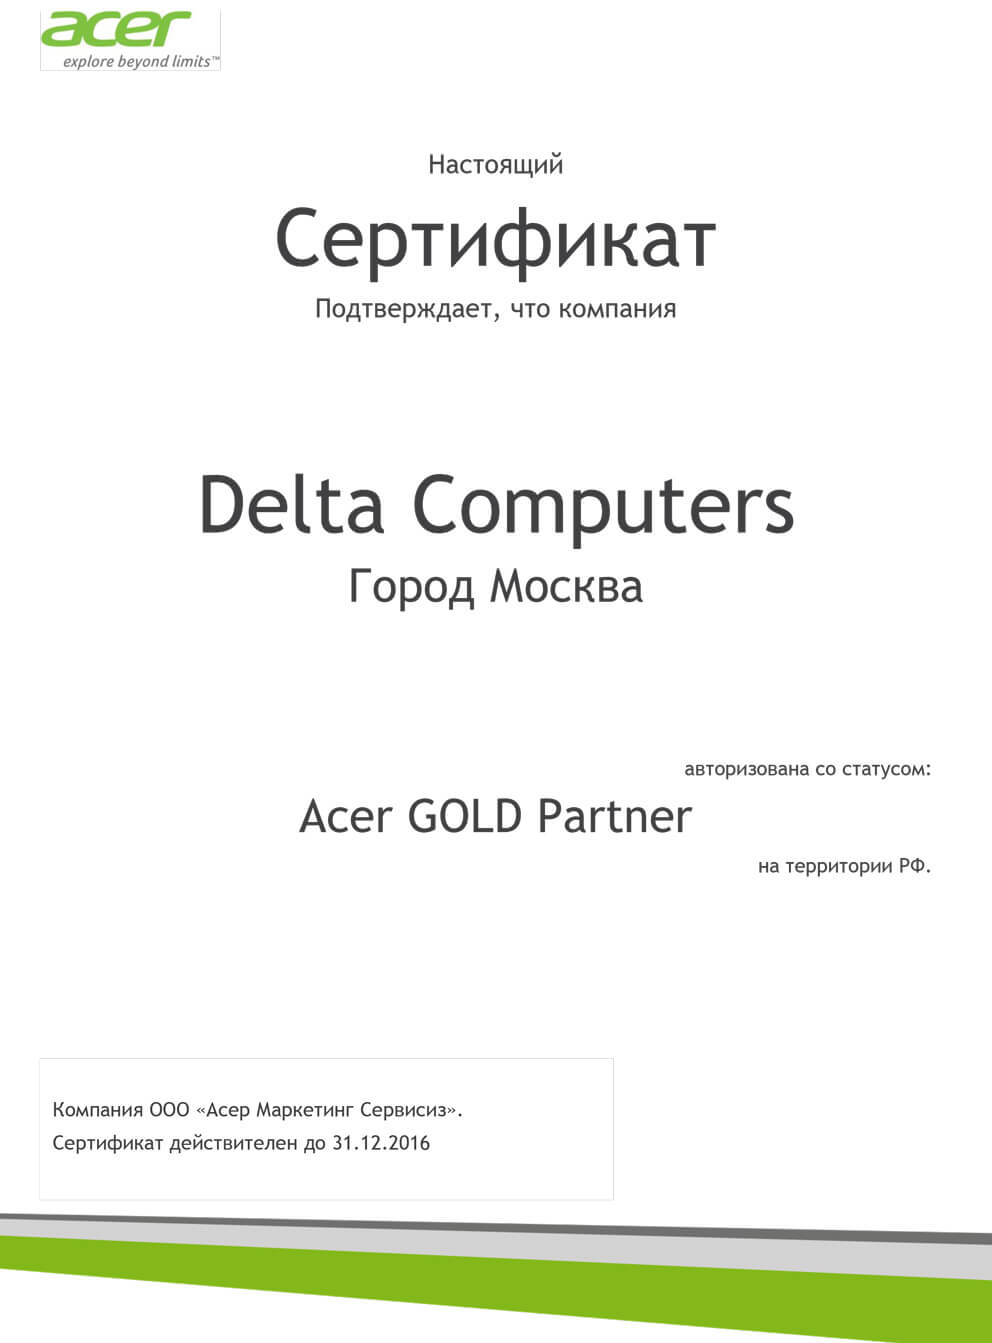 Acer Gold Partner 2016v